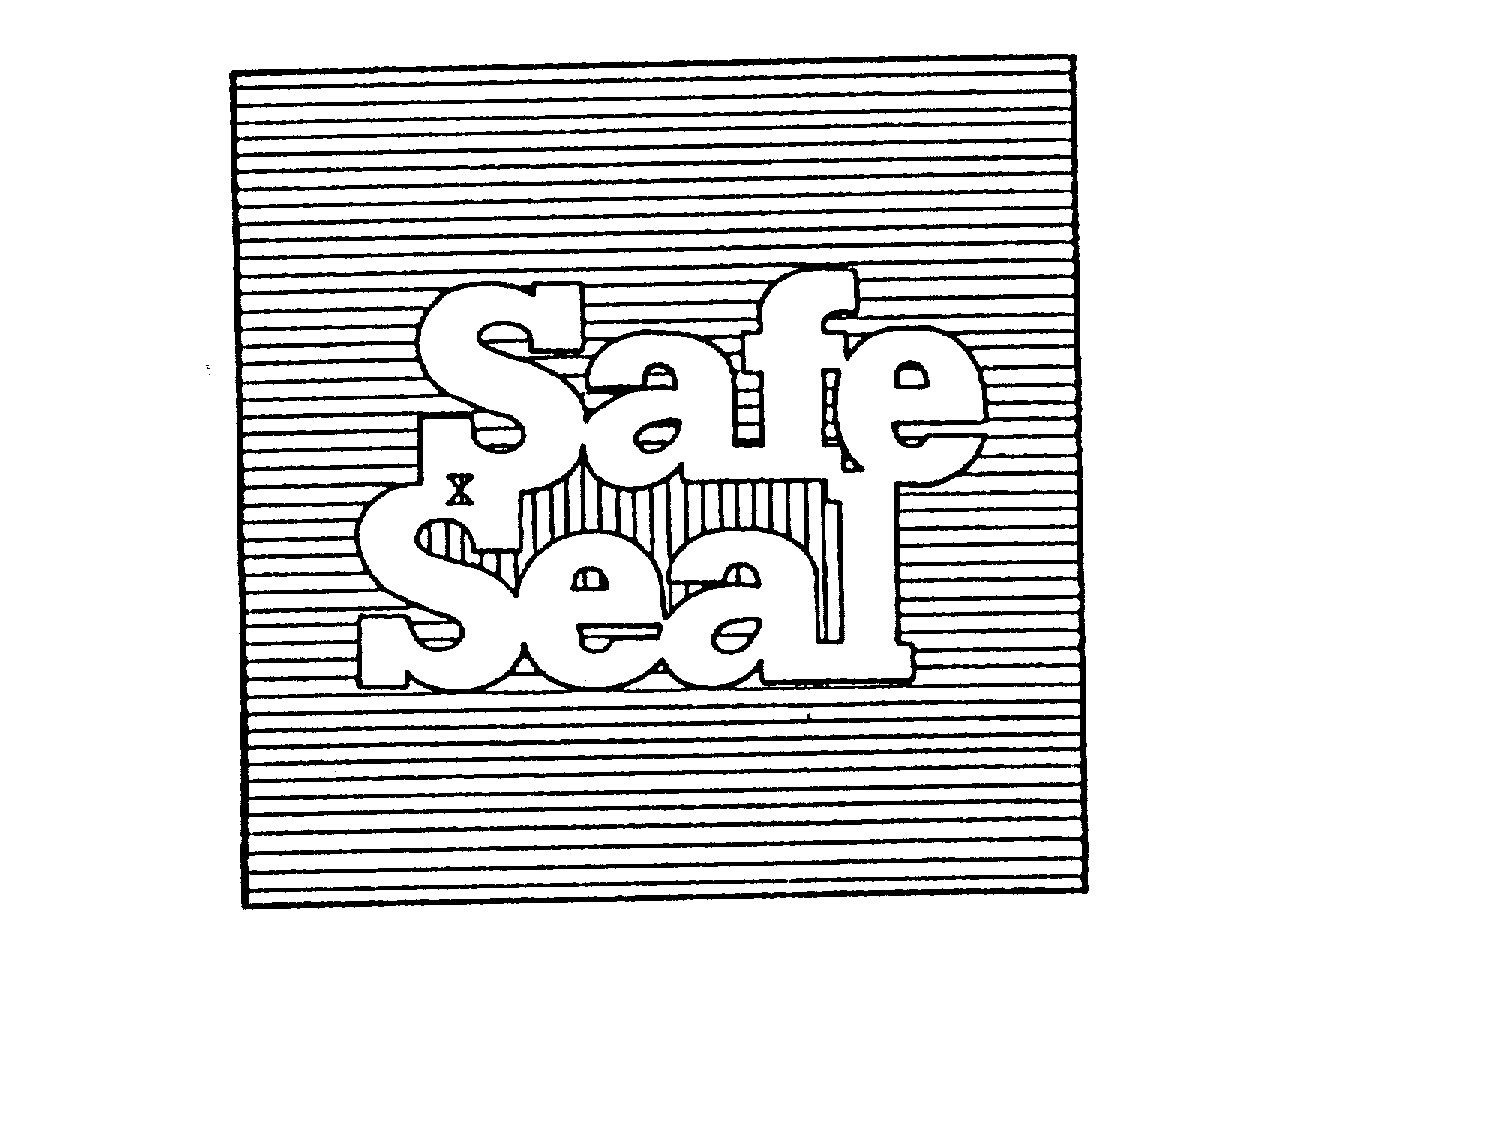  SAFE SEAL